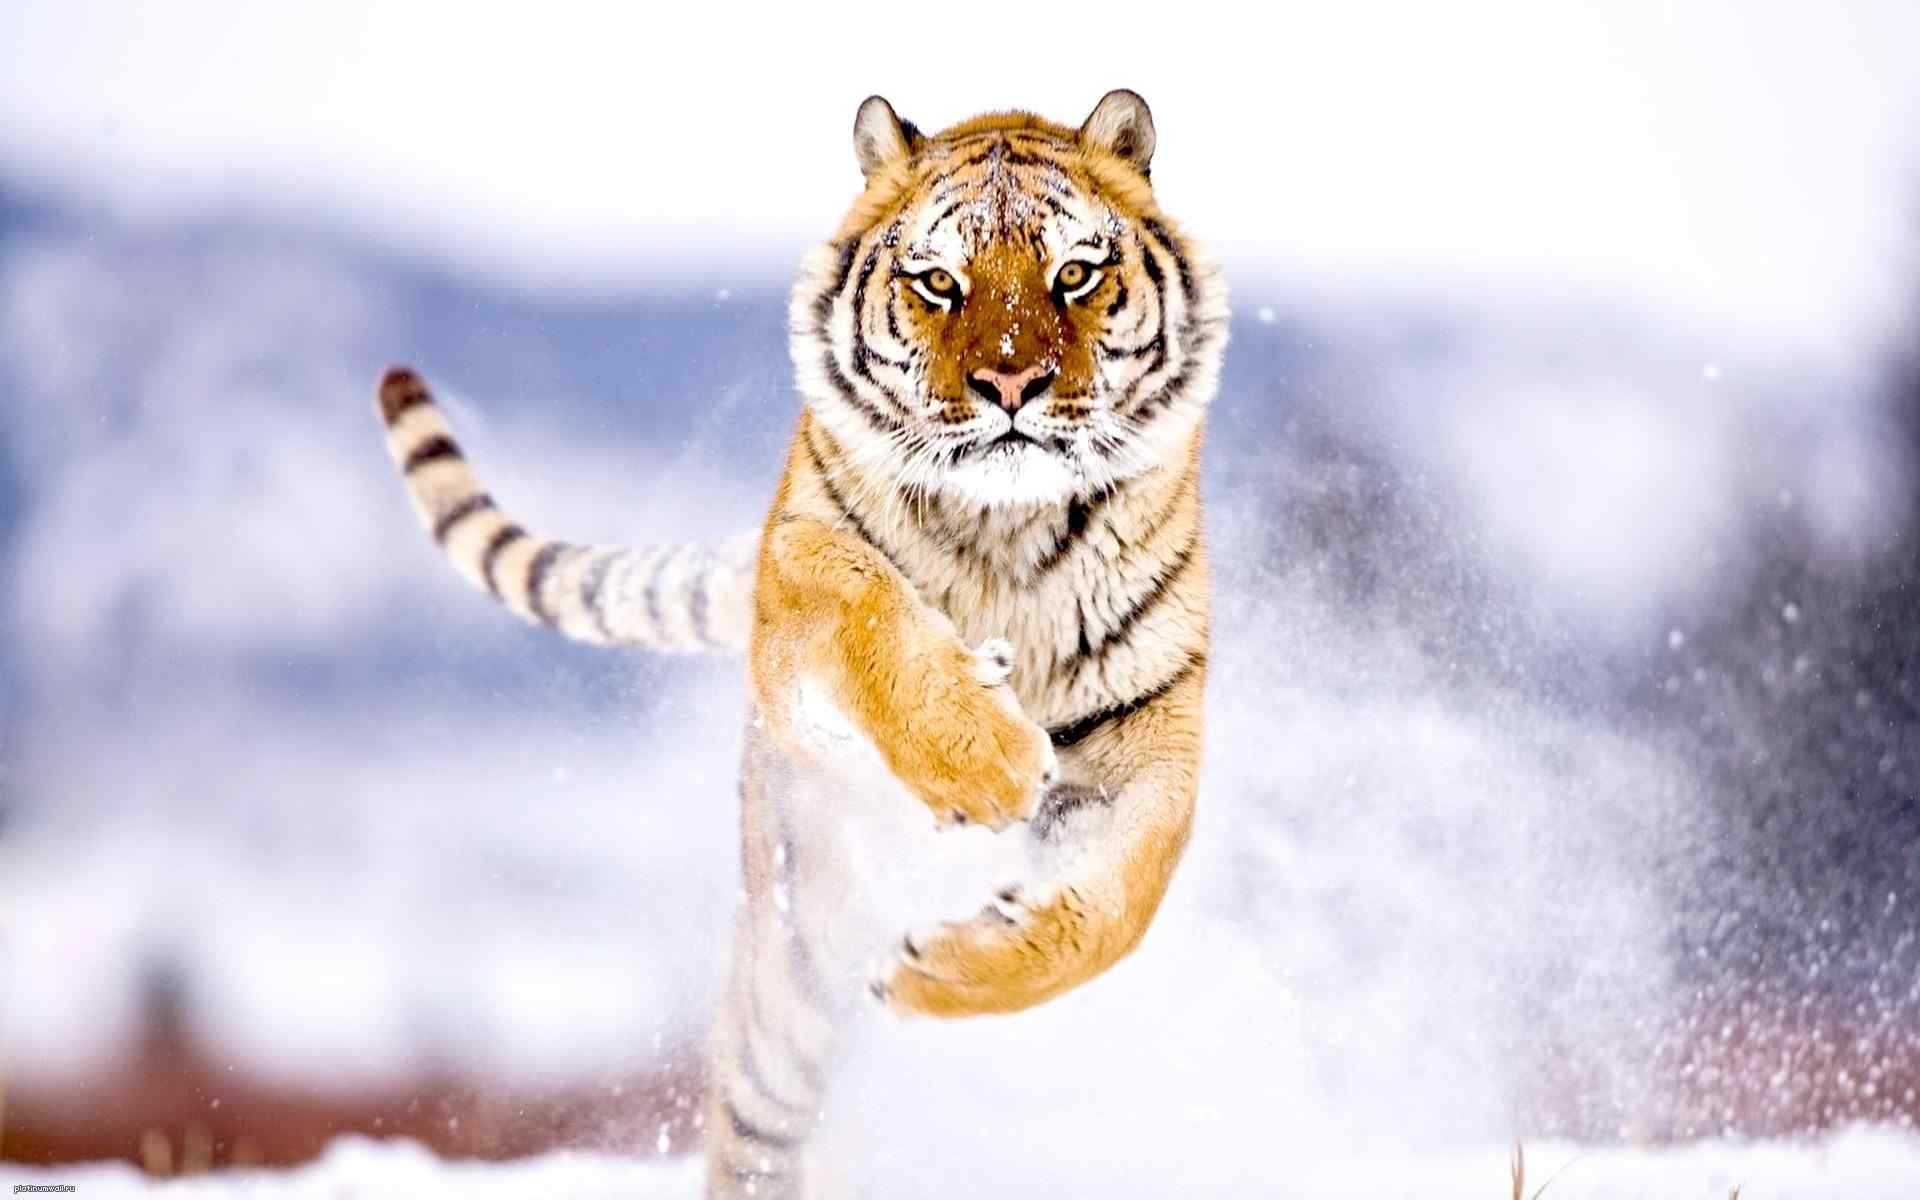 雪地上奔跑的老虎霸气图片桌面壁纸